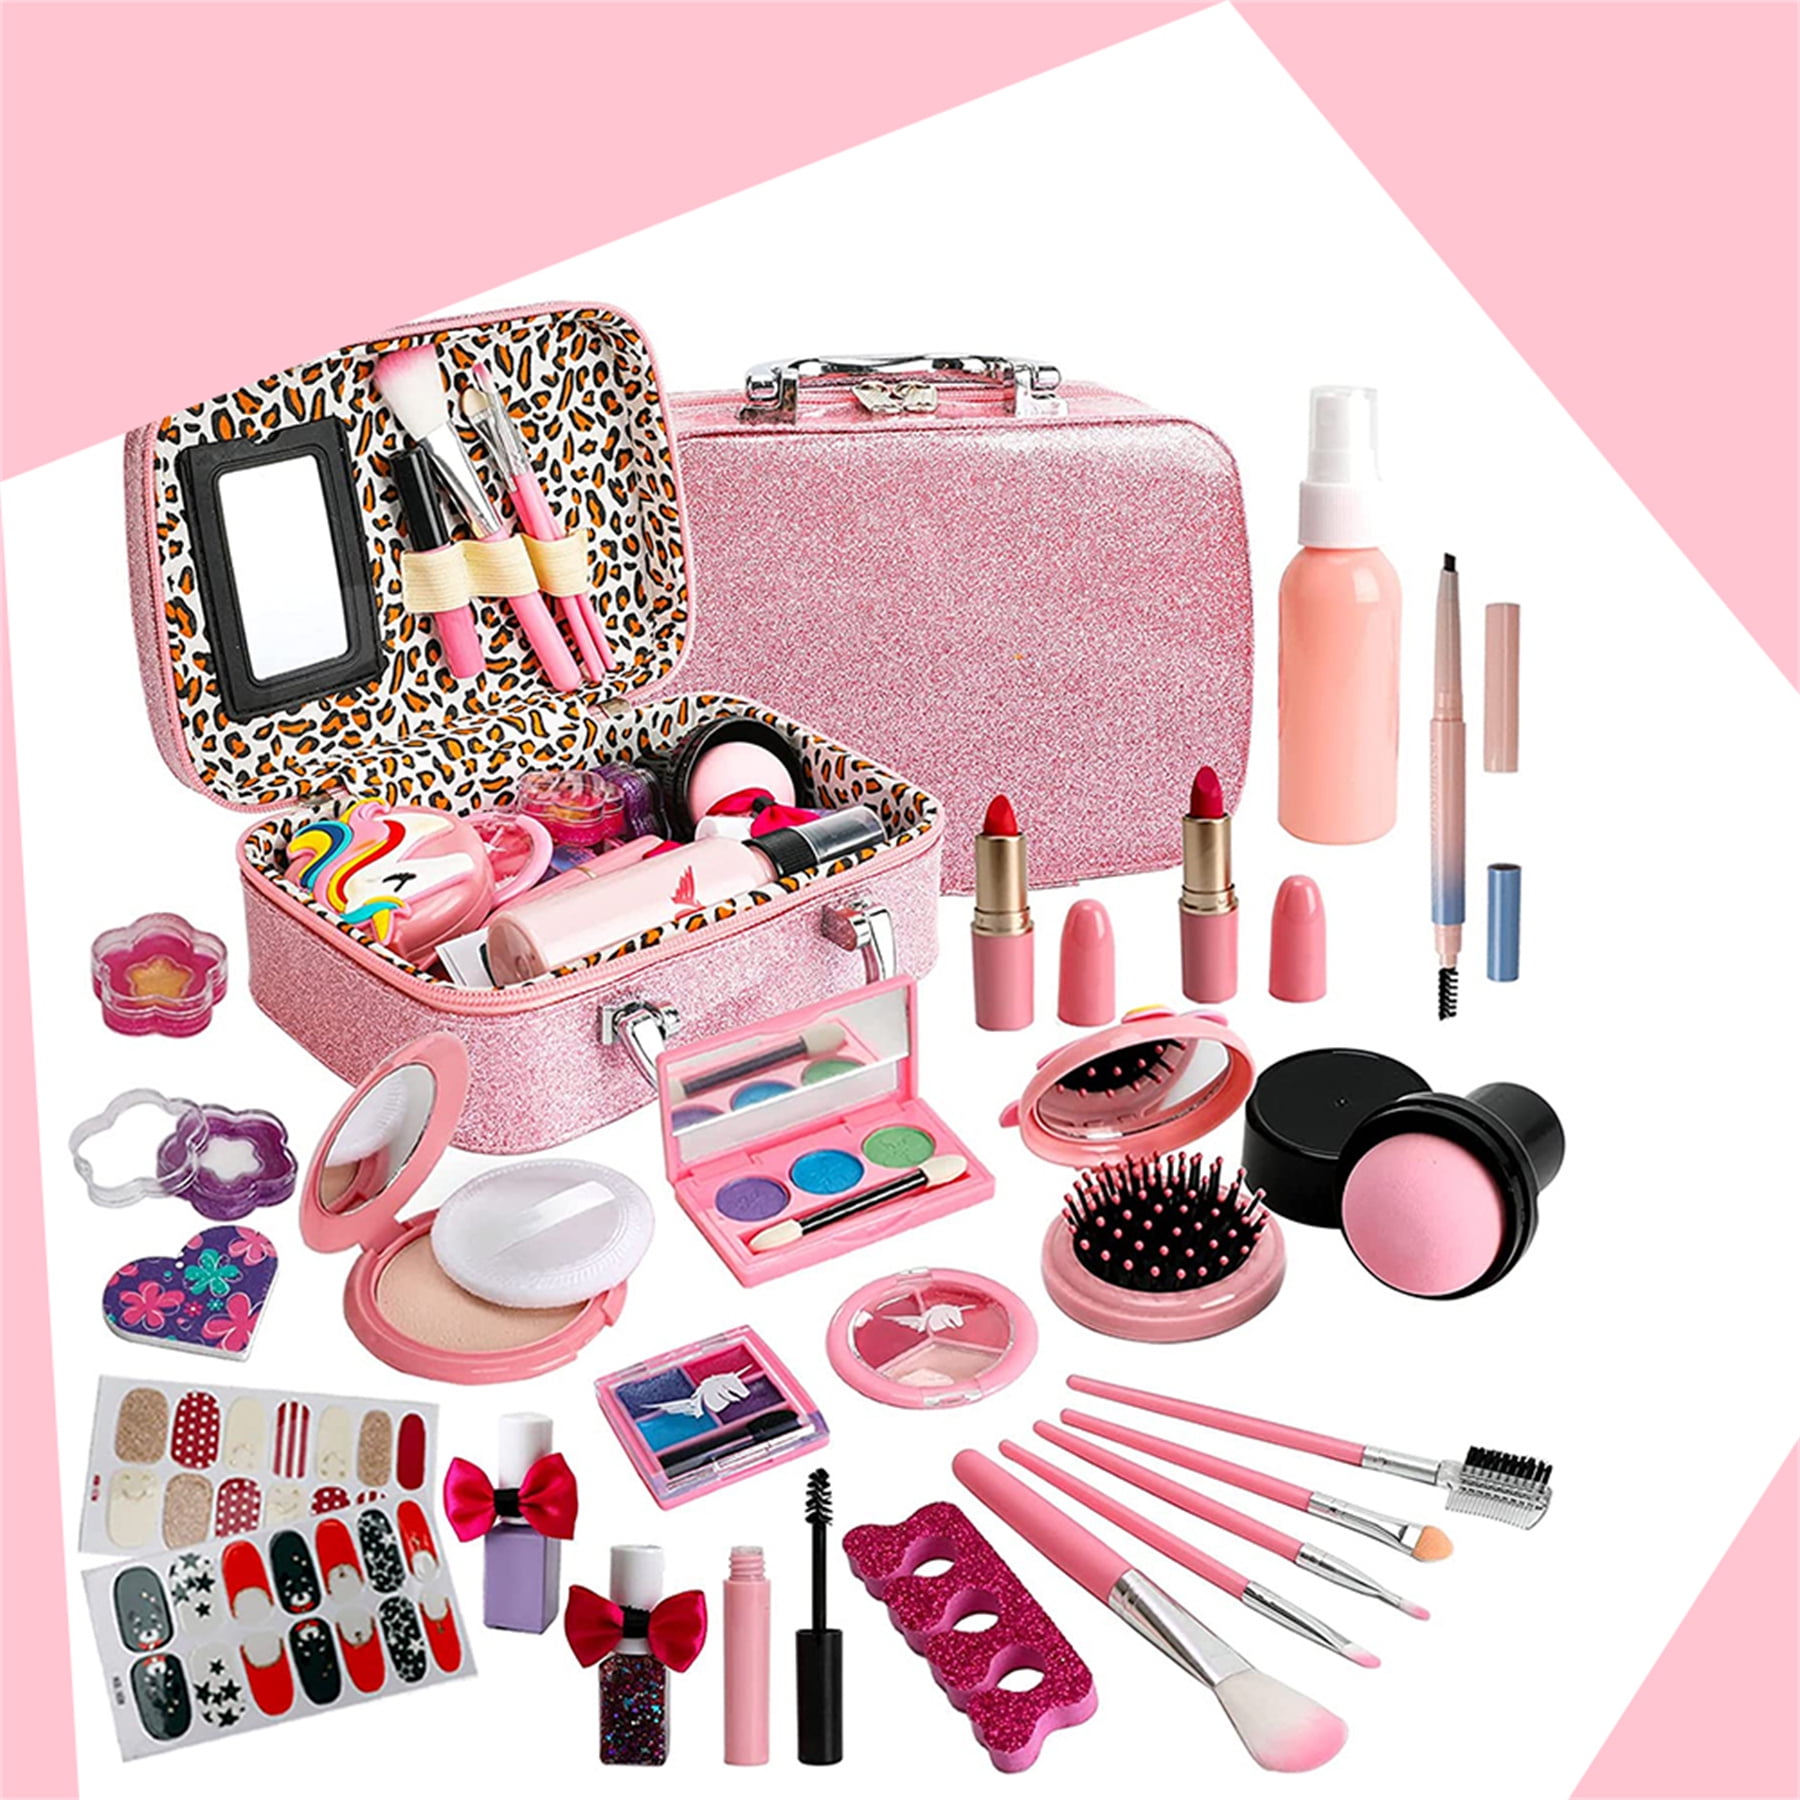  Beayuck Kids Makeup Kit for Girl-Washable Makeup for